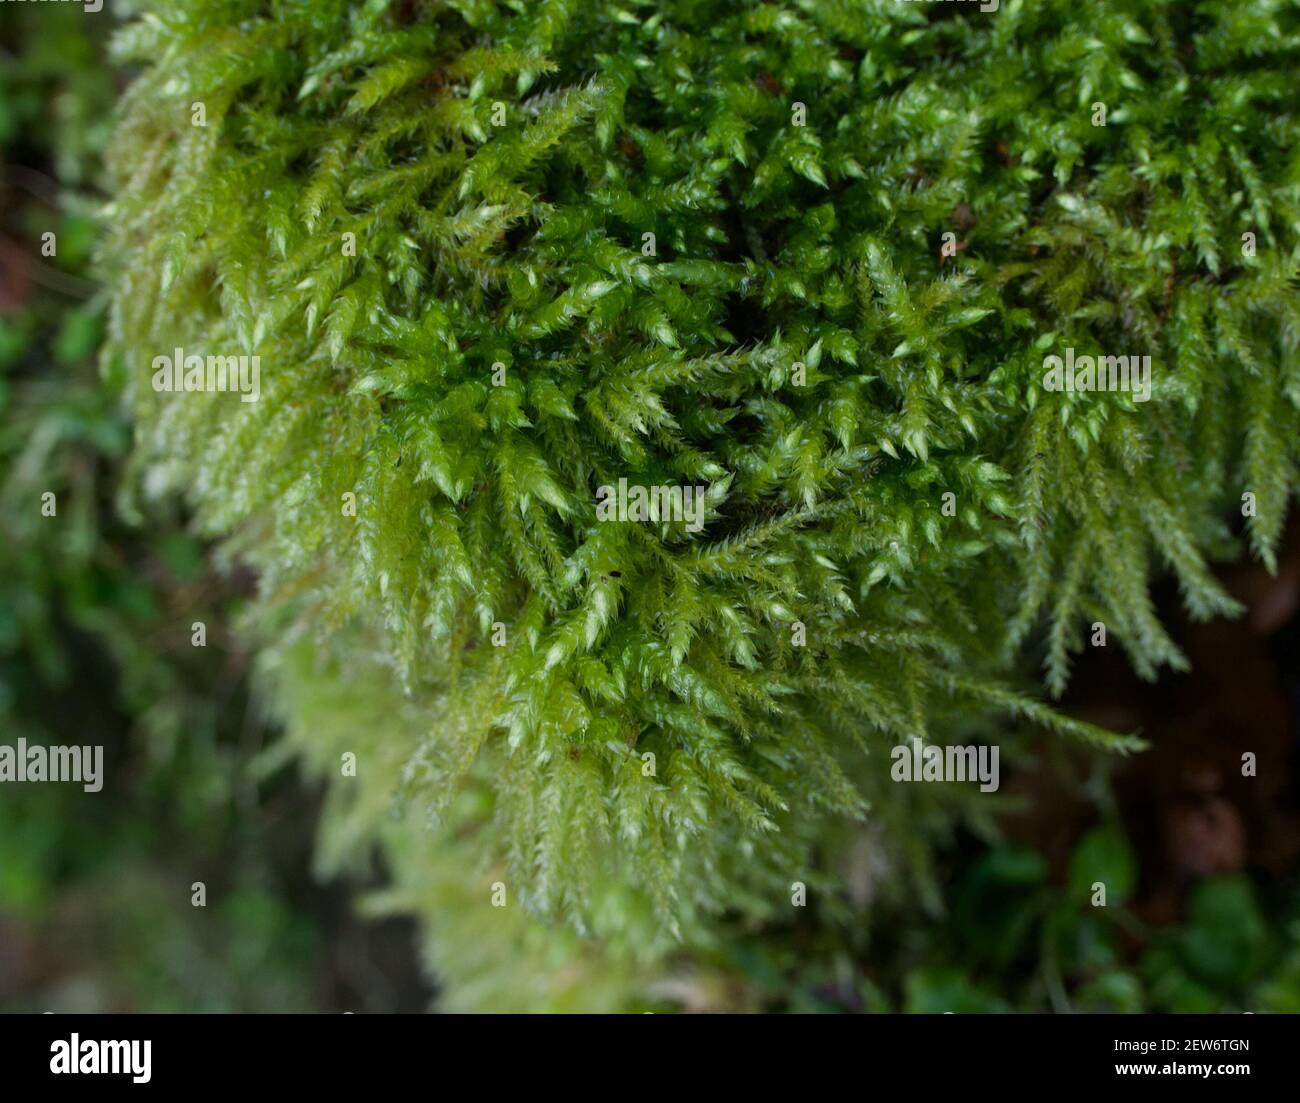 Nahaufnahme des Vollbilds mit grünem Moos, das Laub zeigt Details Stockfoto